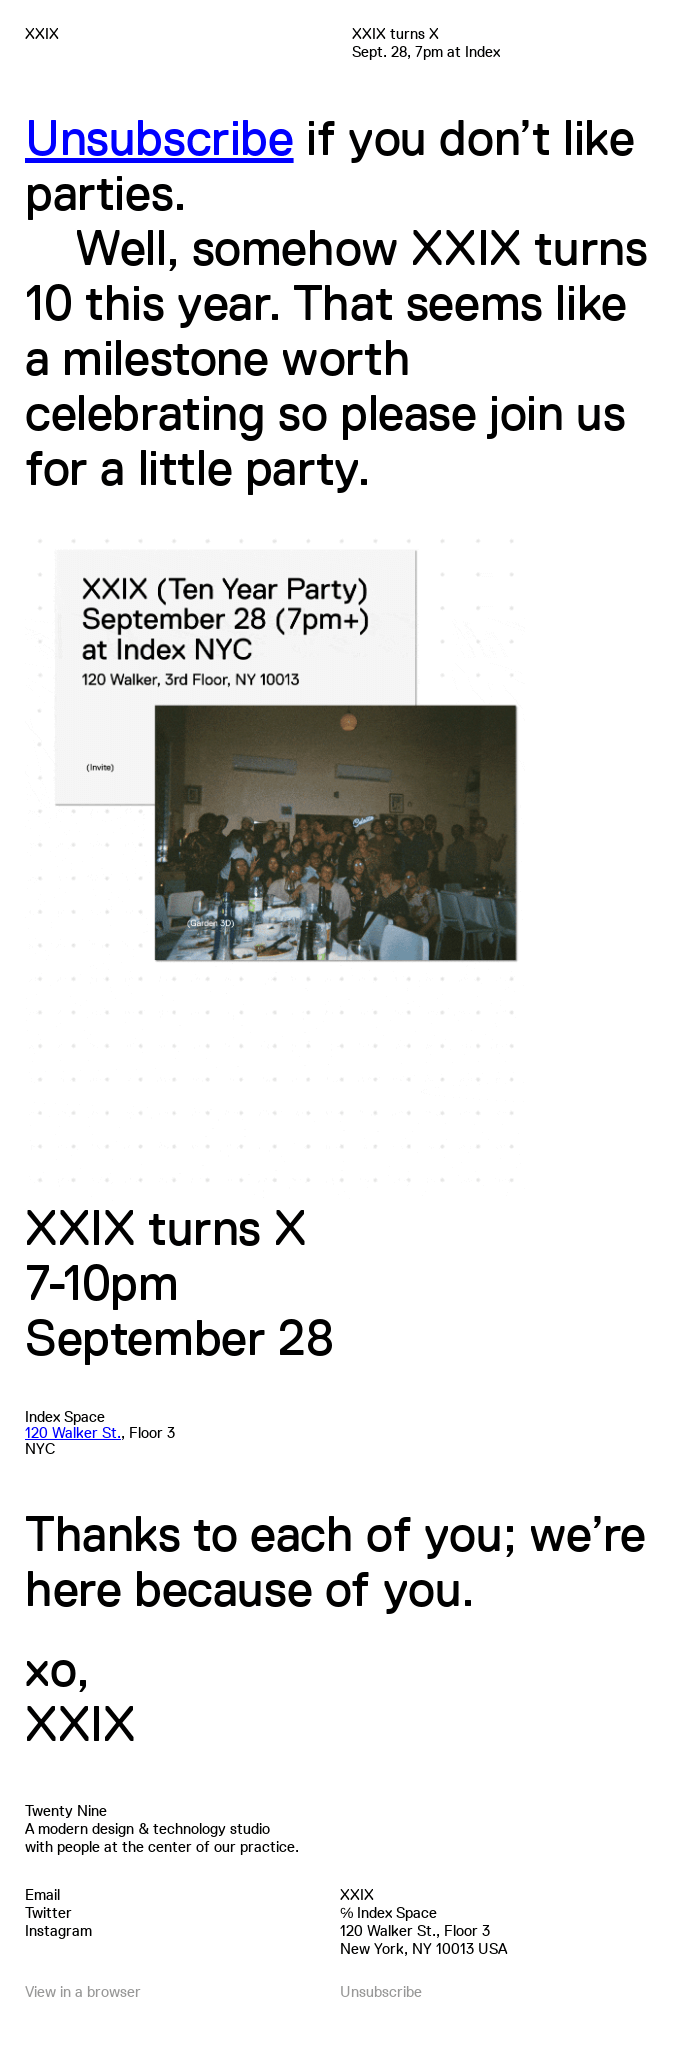 XXIX turns X | 7pm Sept. 28 @ Index